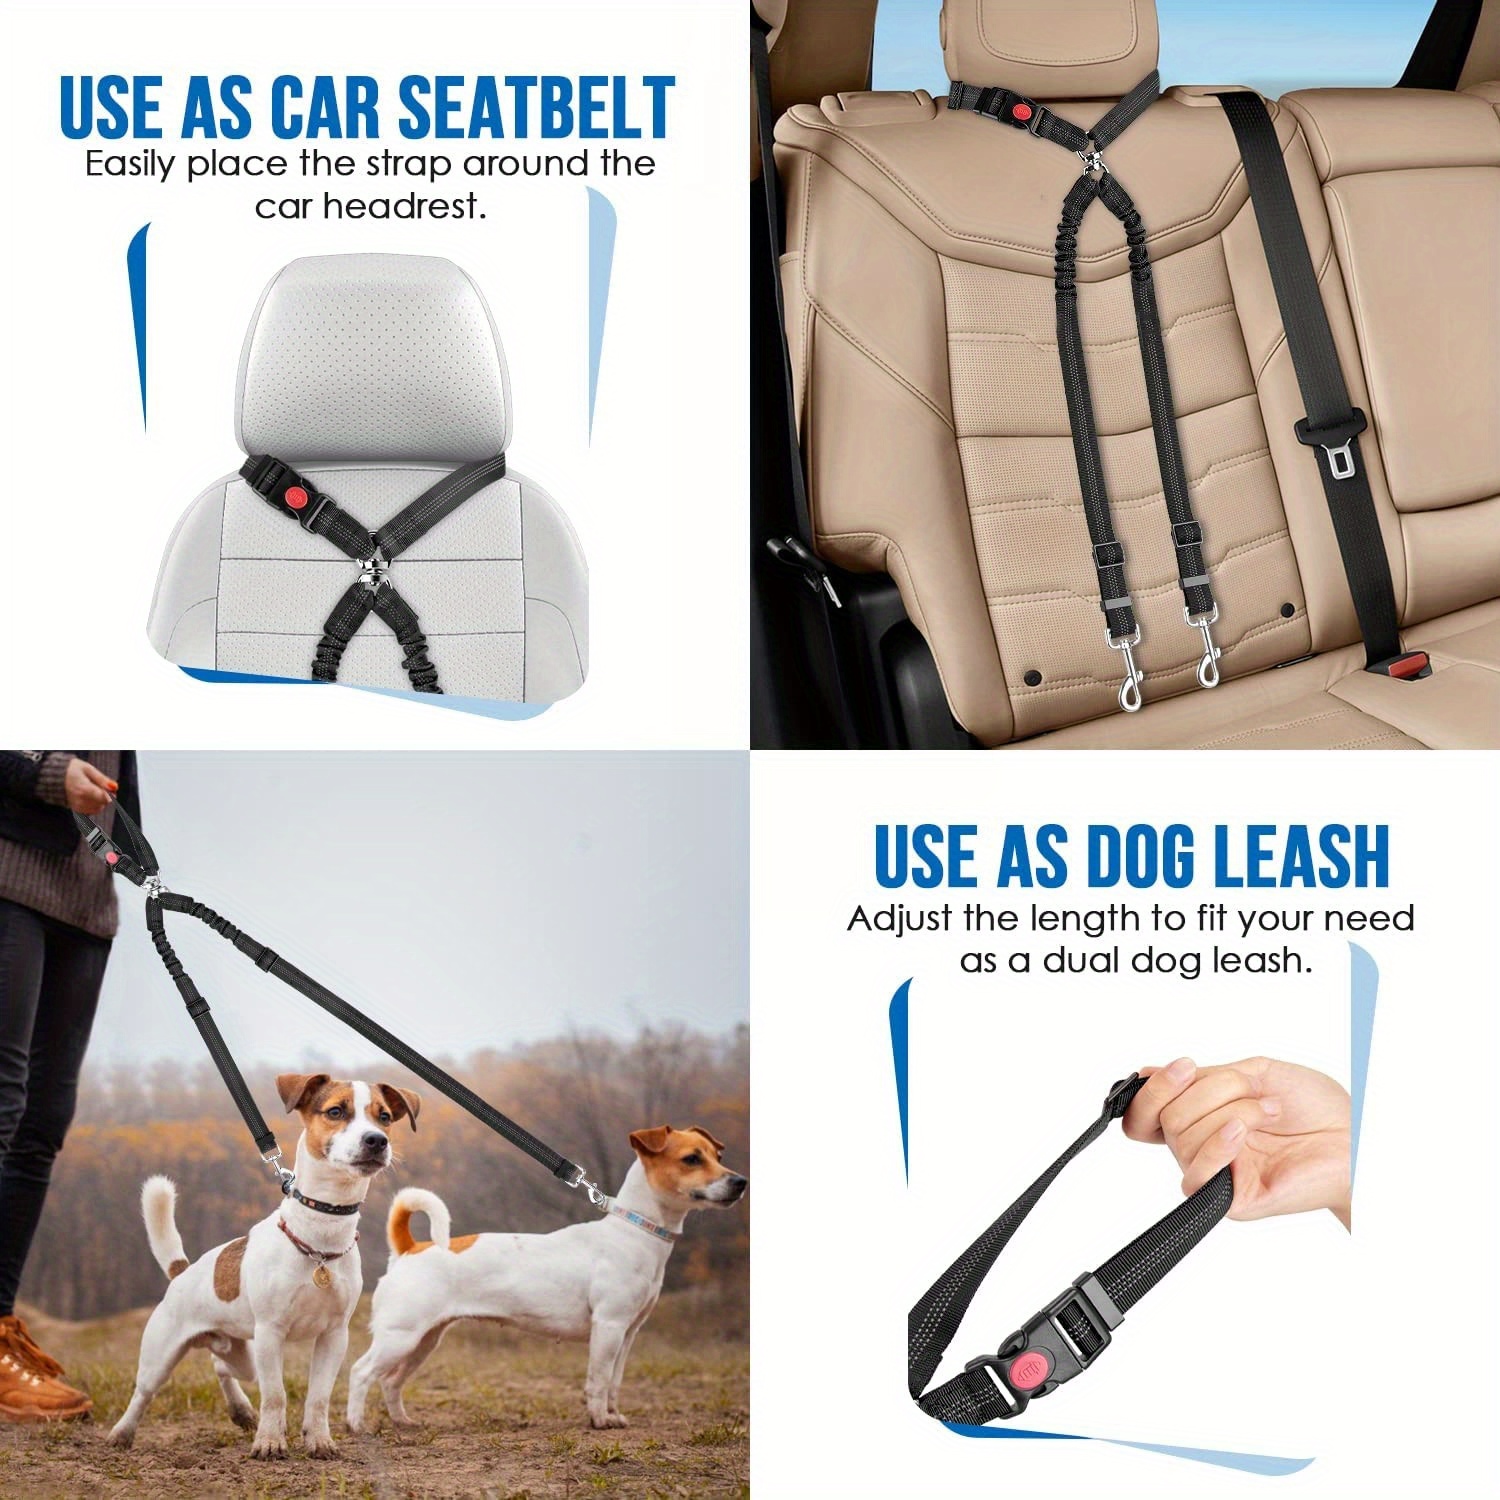 Cinturones de seguridad para perros de coche, 2 pack reposacabezas de coche  Cabezales de seguridad ajustables